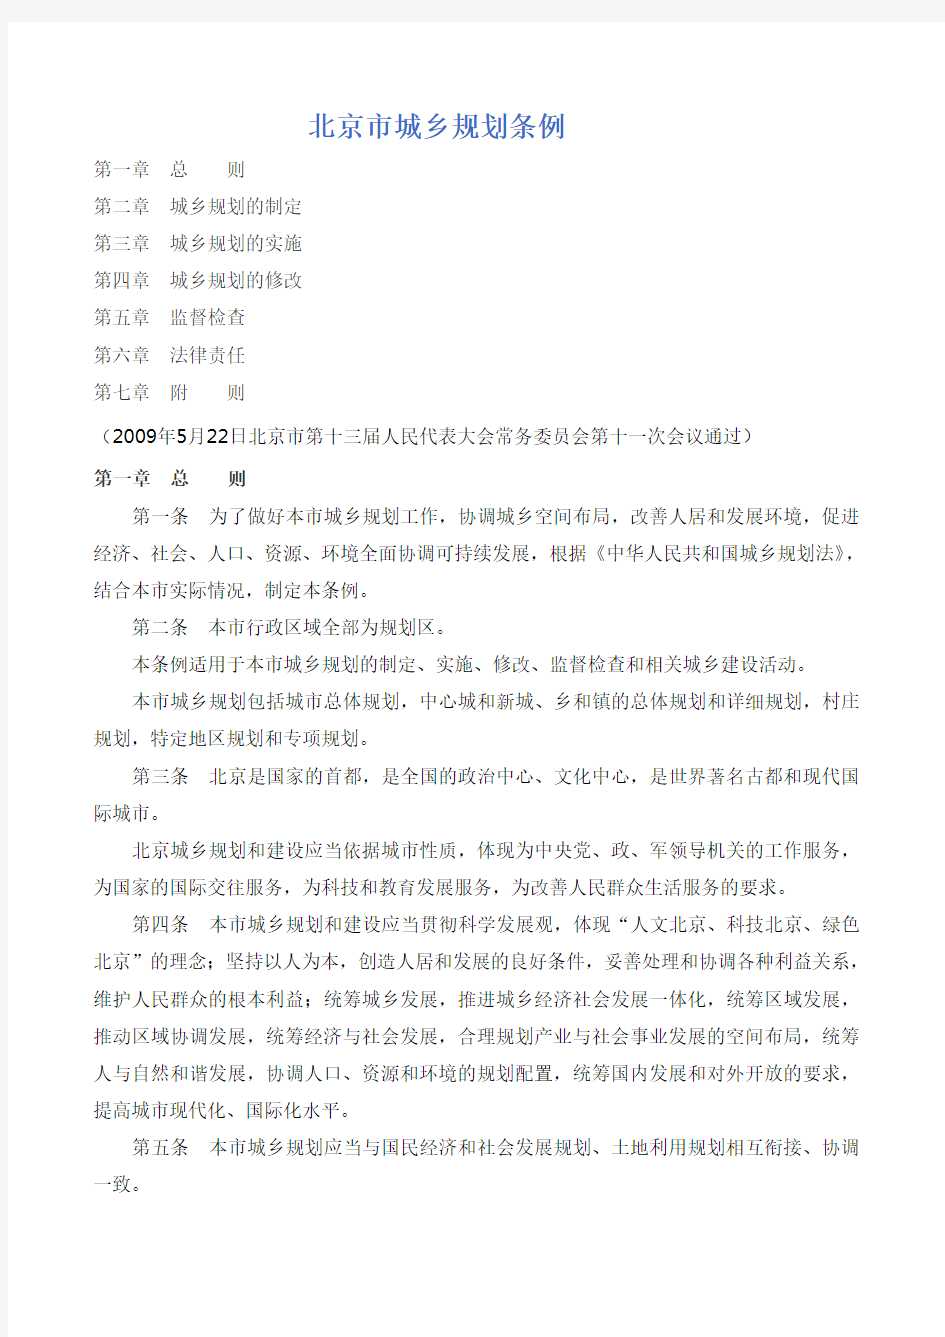 2009年10月1日起施行《北京市城乡规划条例》